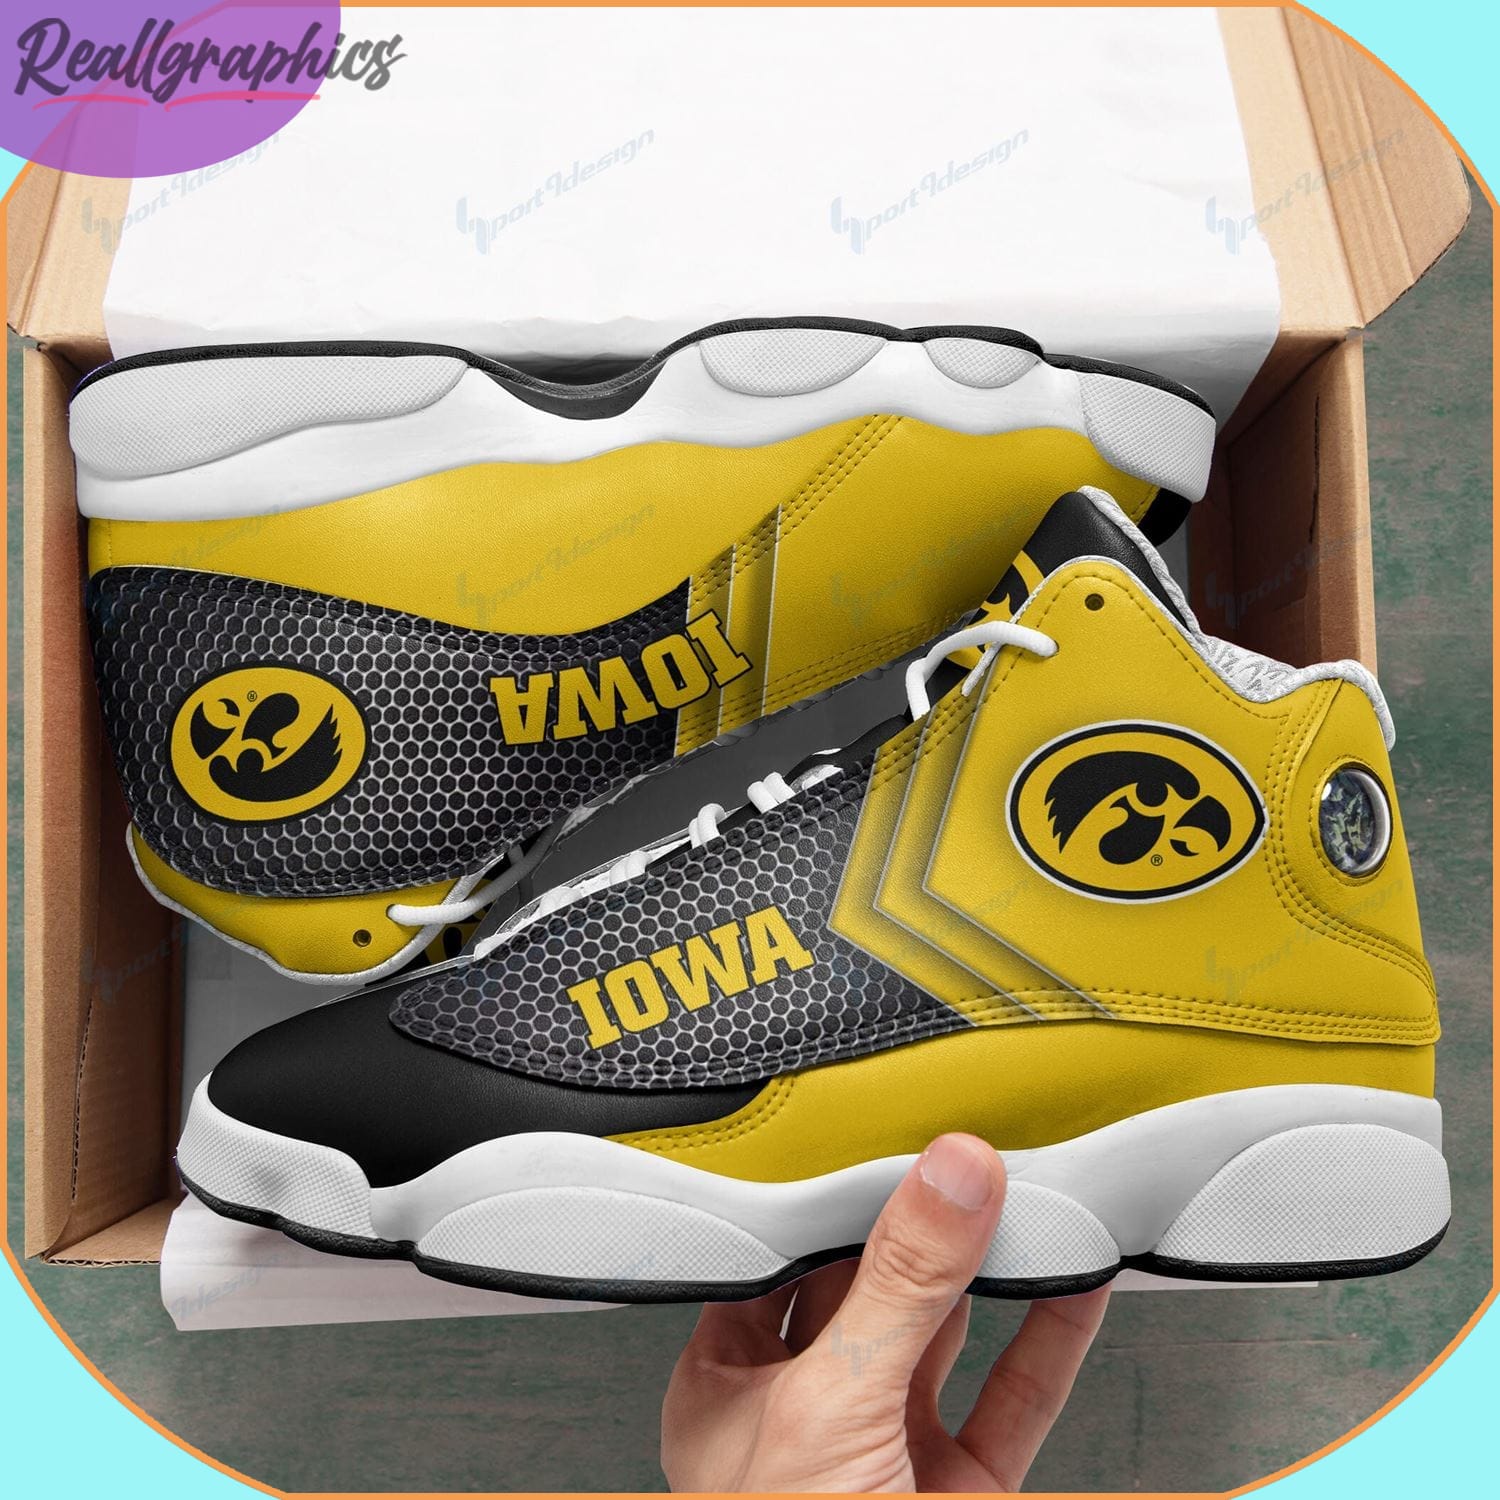 Iowa Hawkeyes AJordan 13 Sneakers